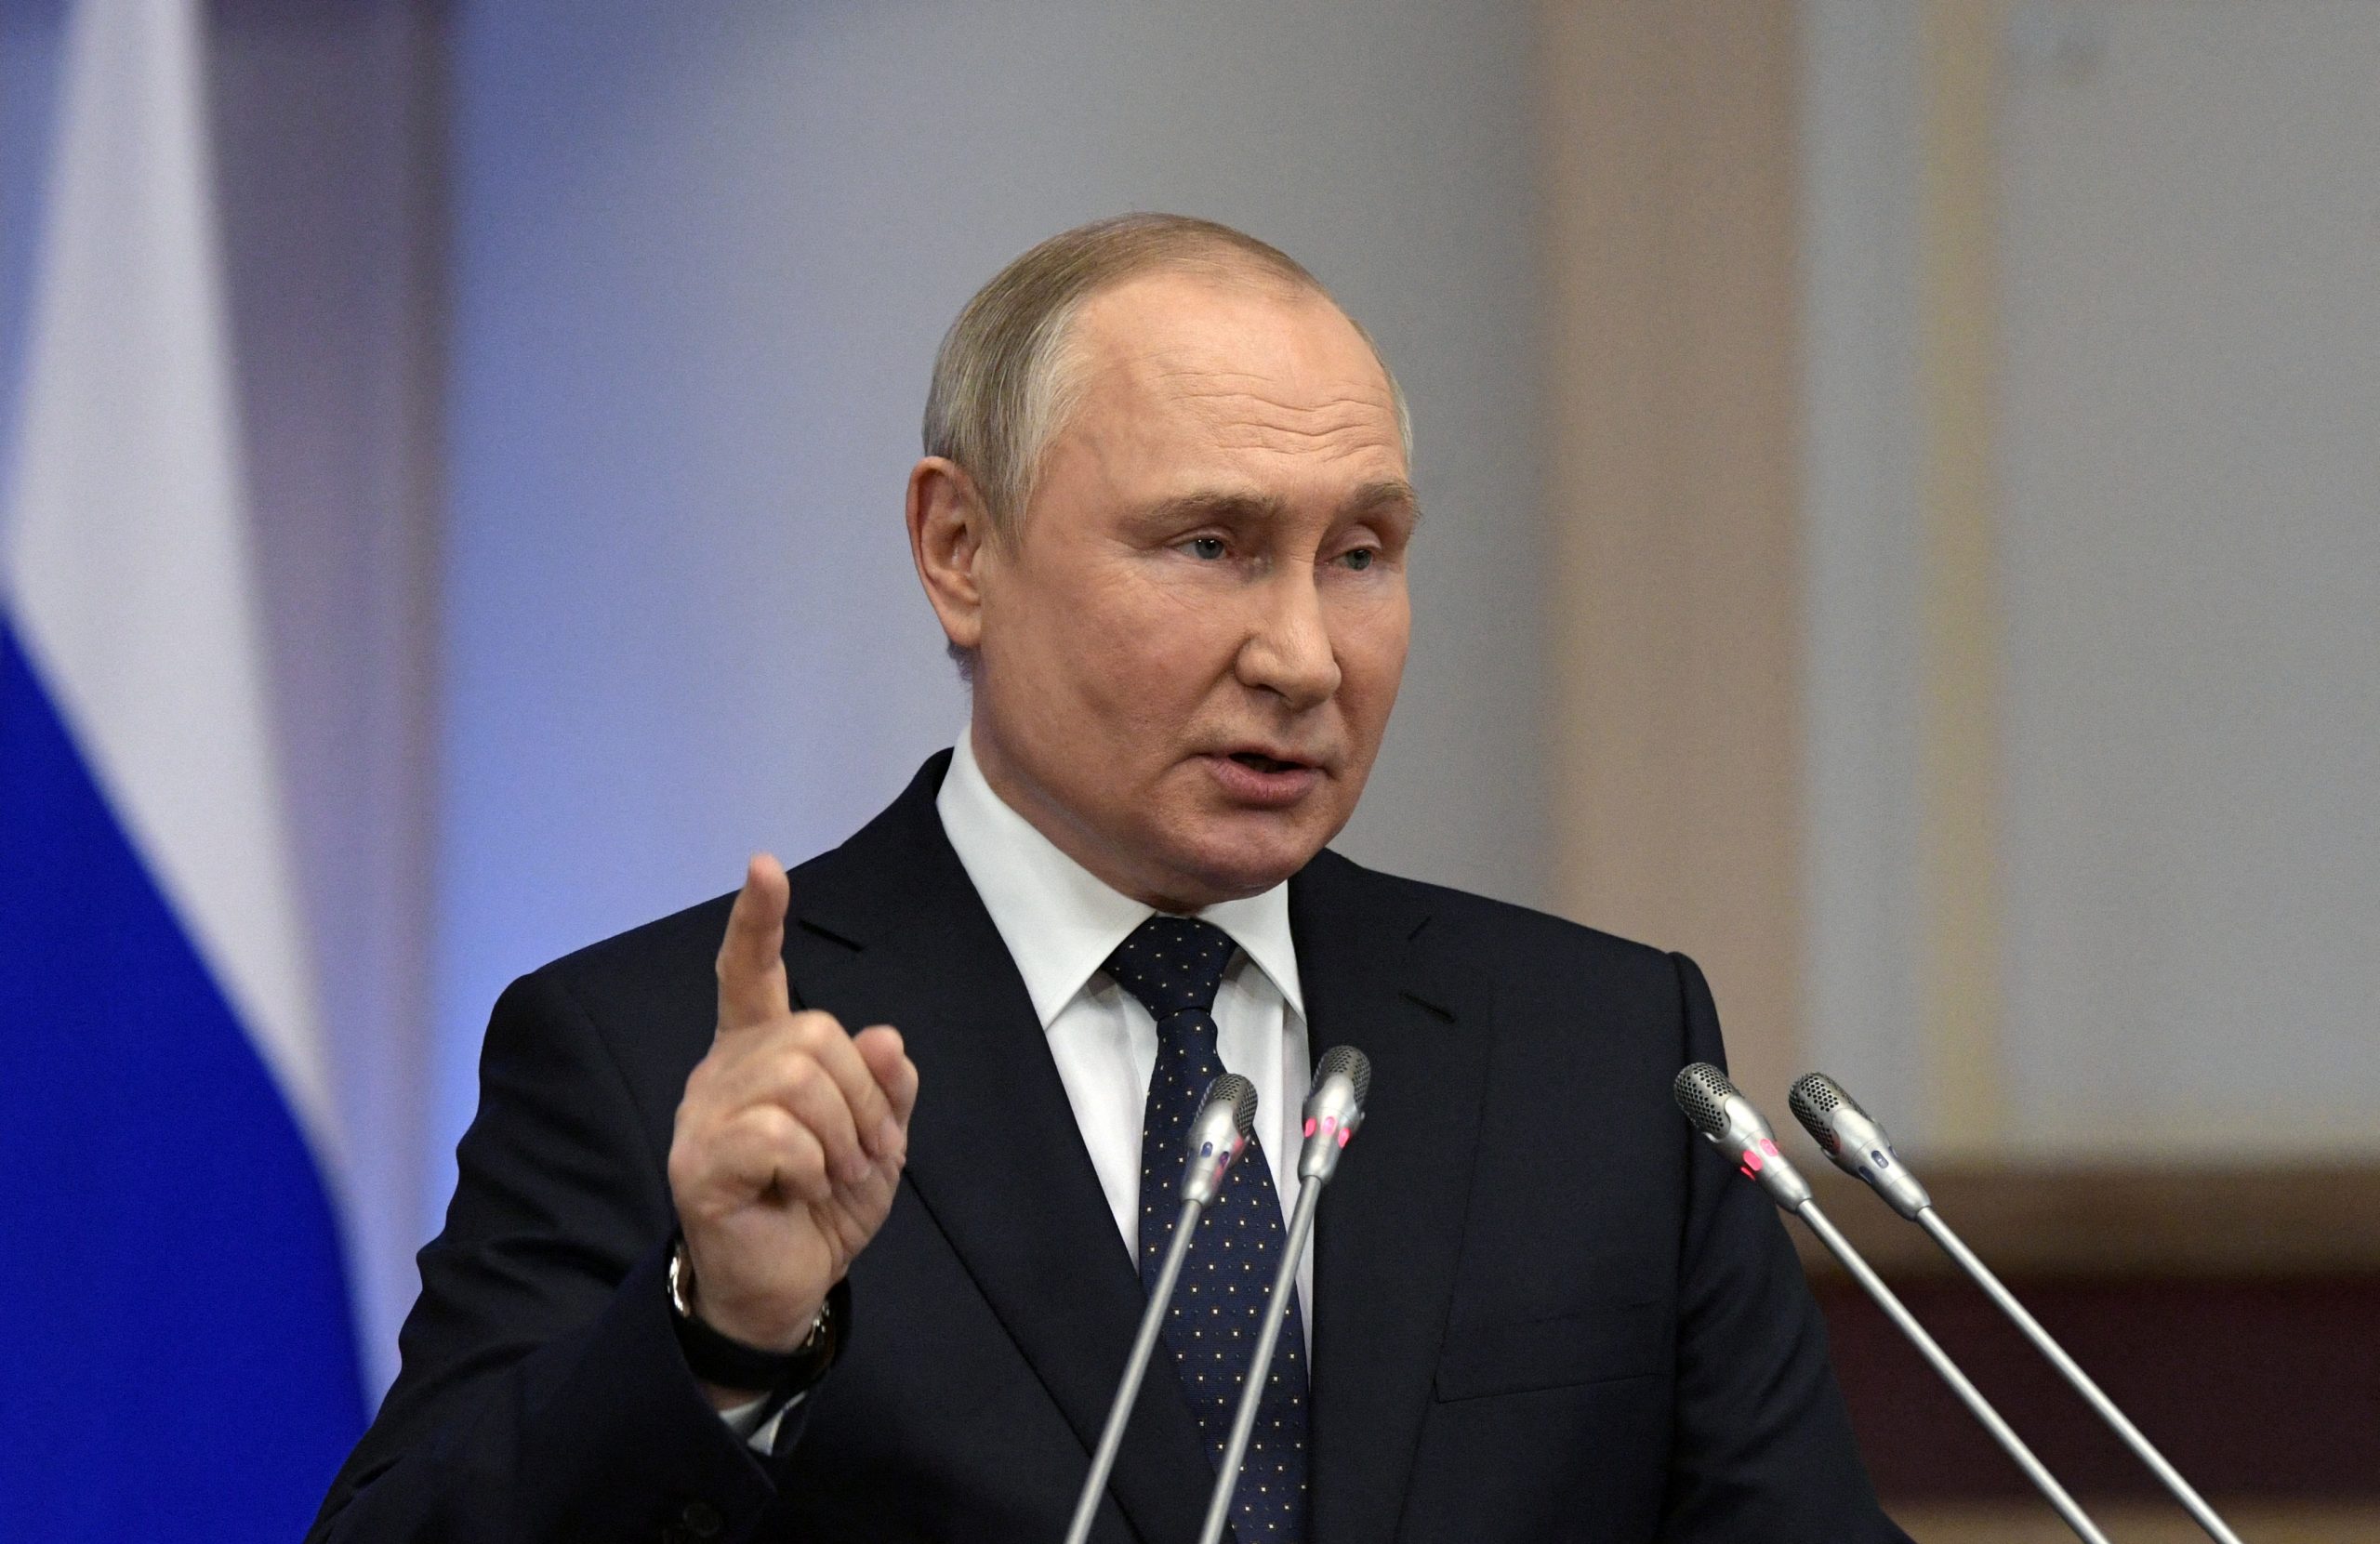 پوتن کا یورپ کو سخت جواب، روس 11 اگست کو لانچ کرے گا مون لینڈر